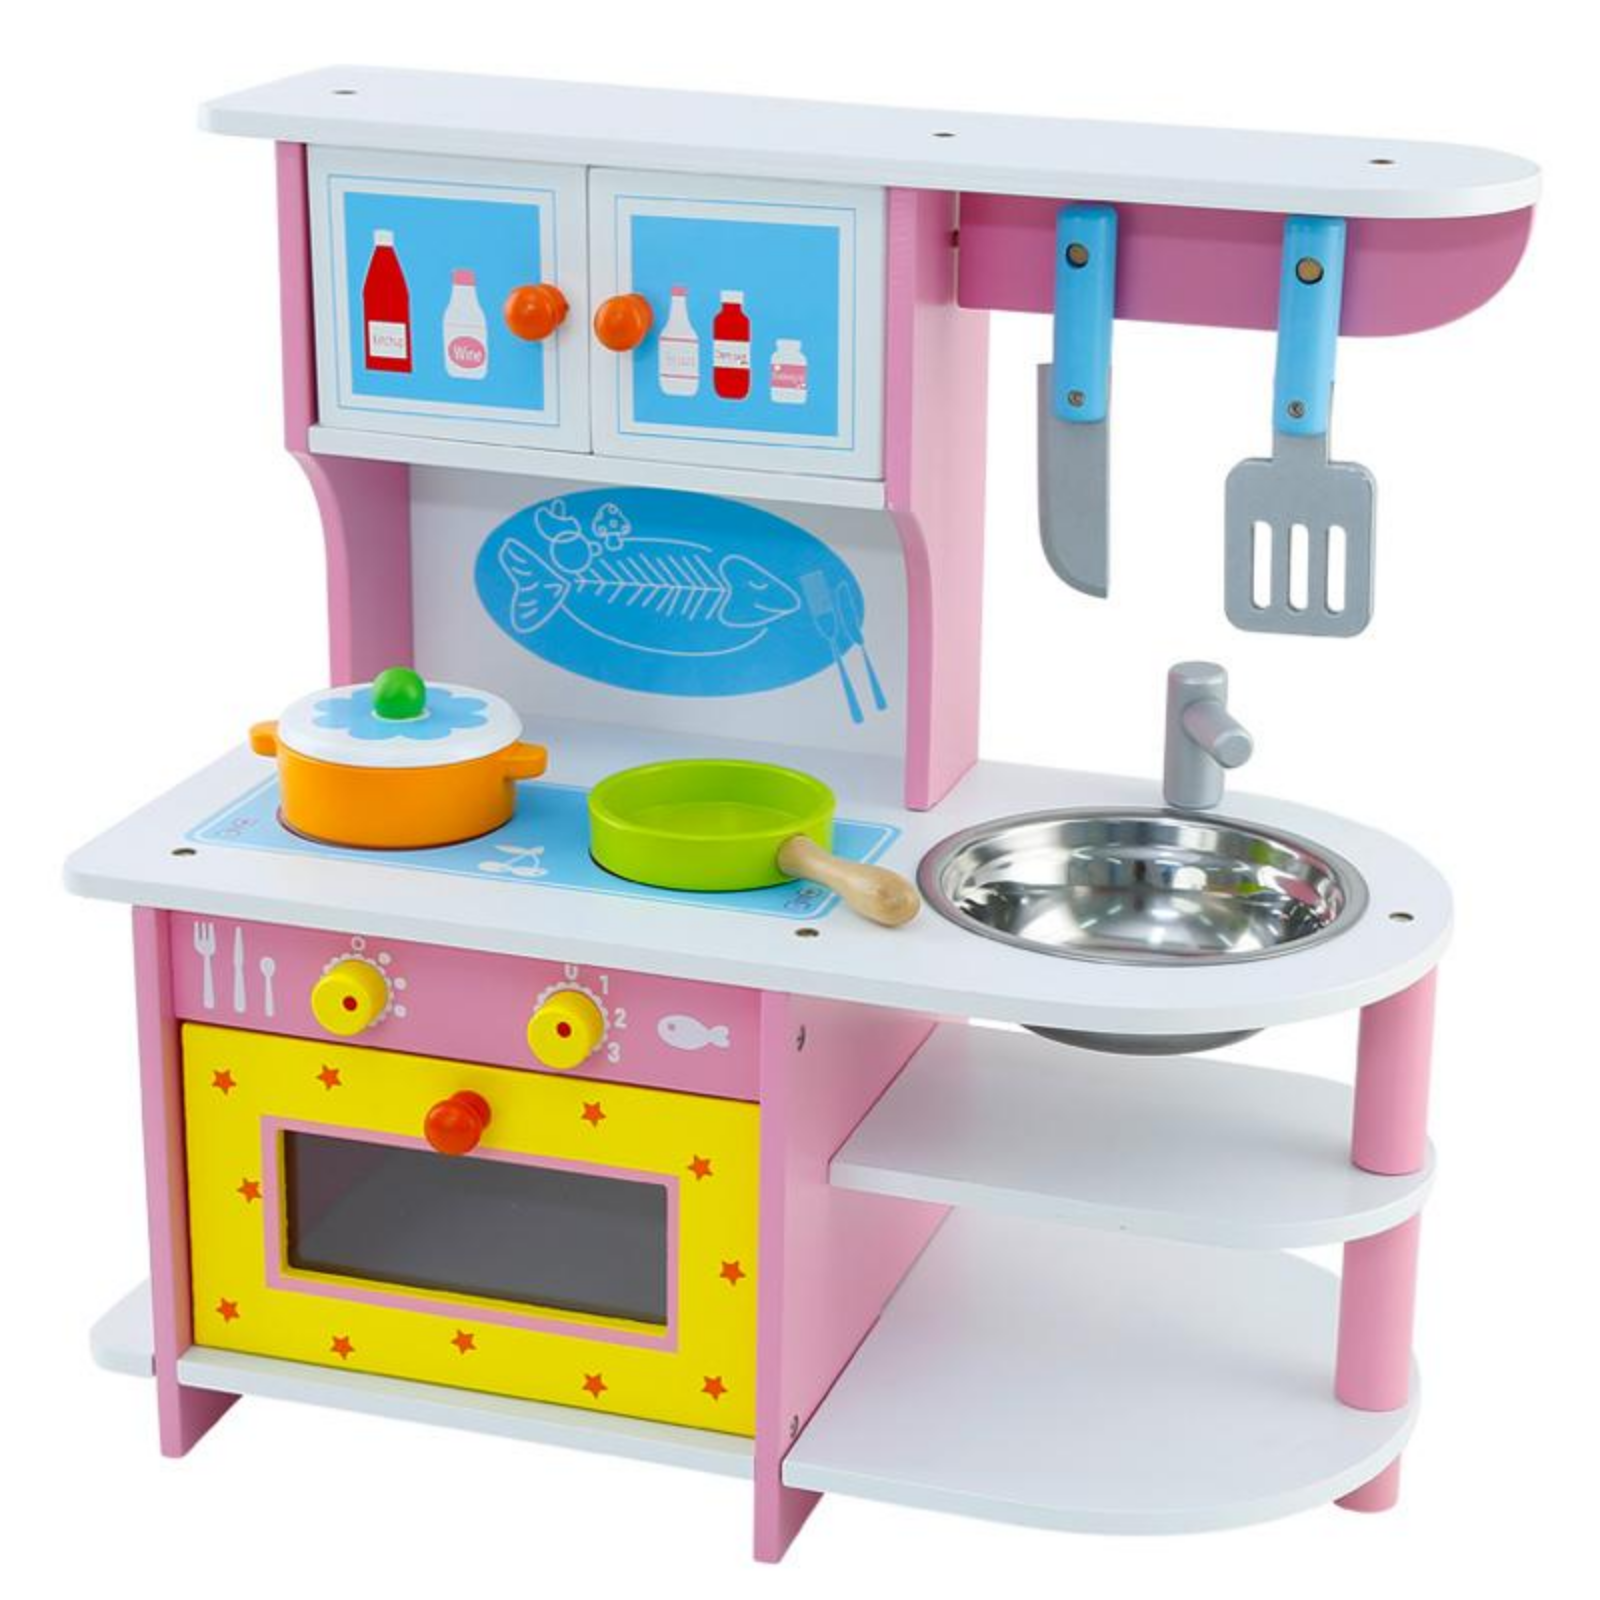 Bucatarie din lemn pentru copii, roz cu cuptor, aragaz, chiuveta si ustensile [1]